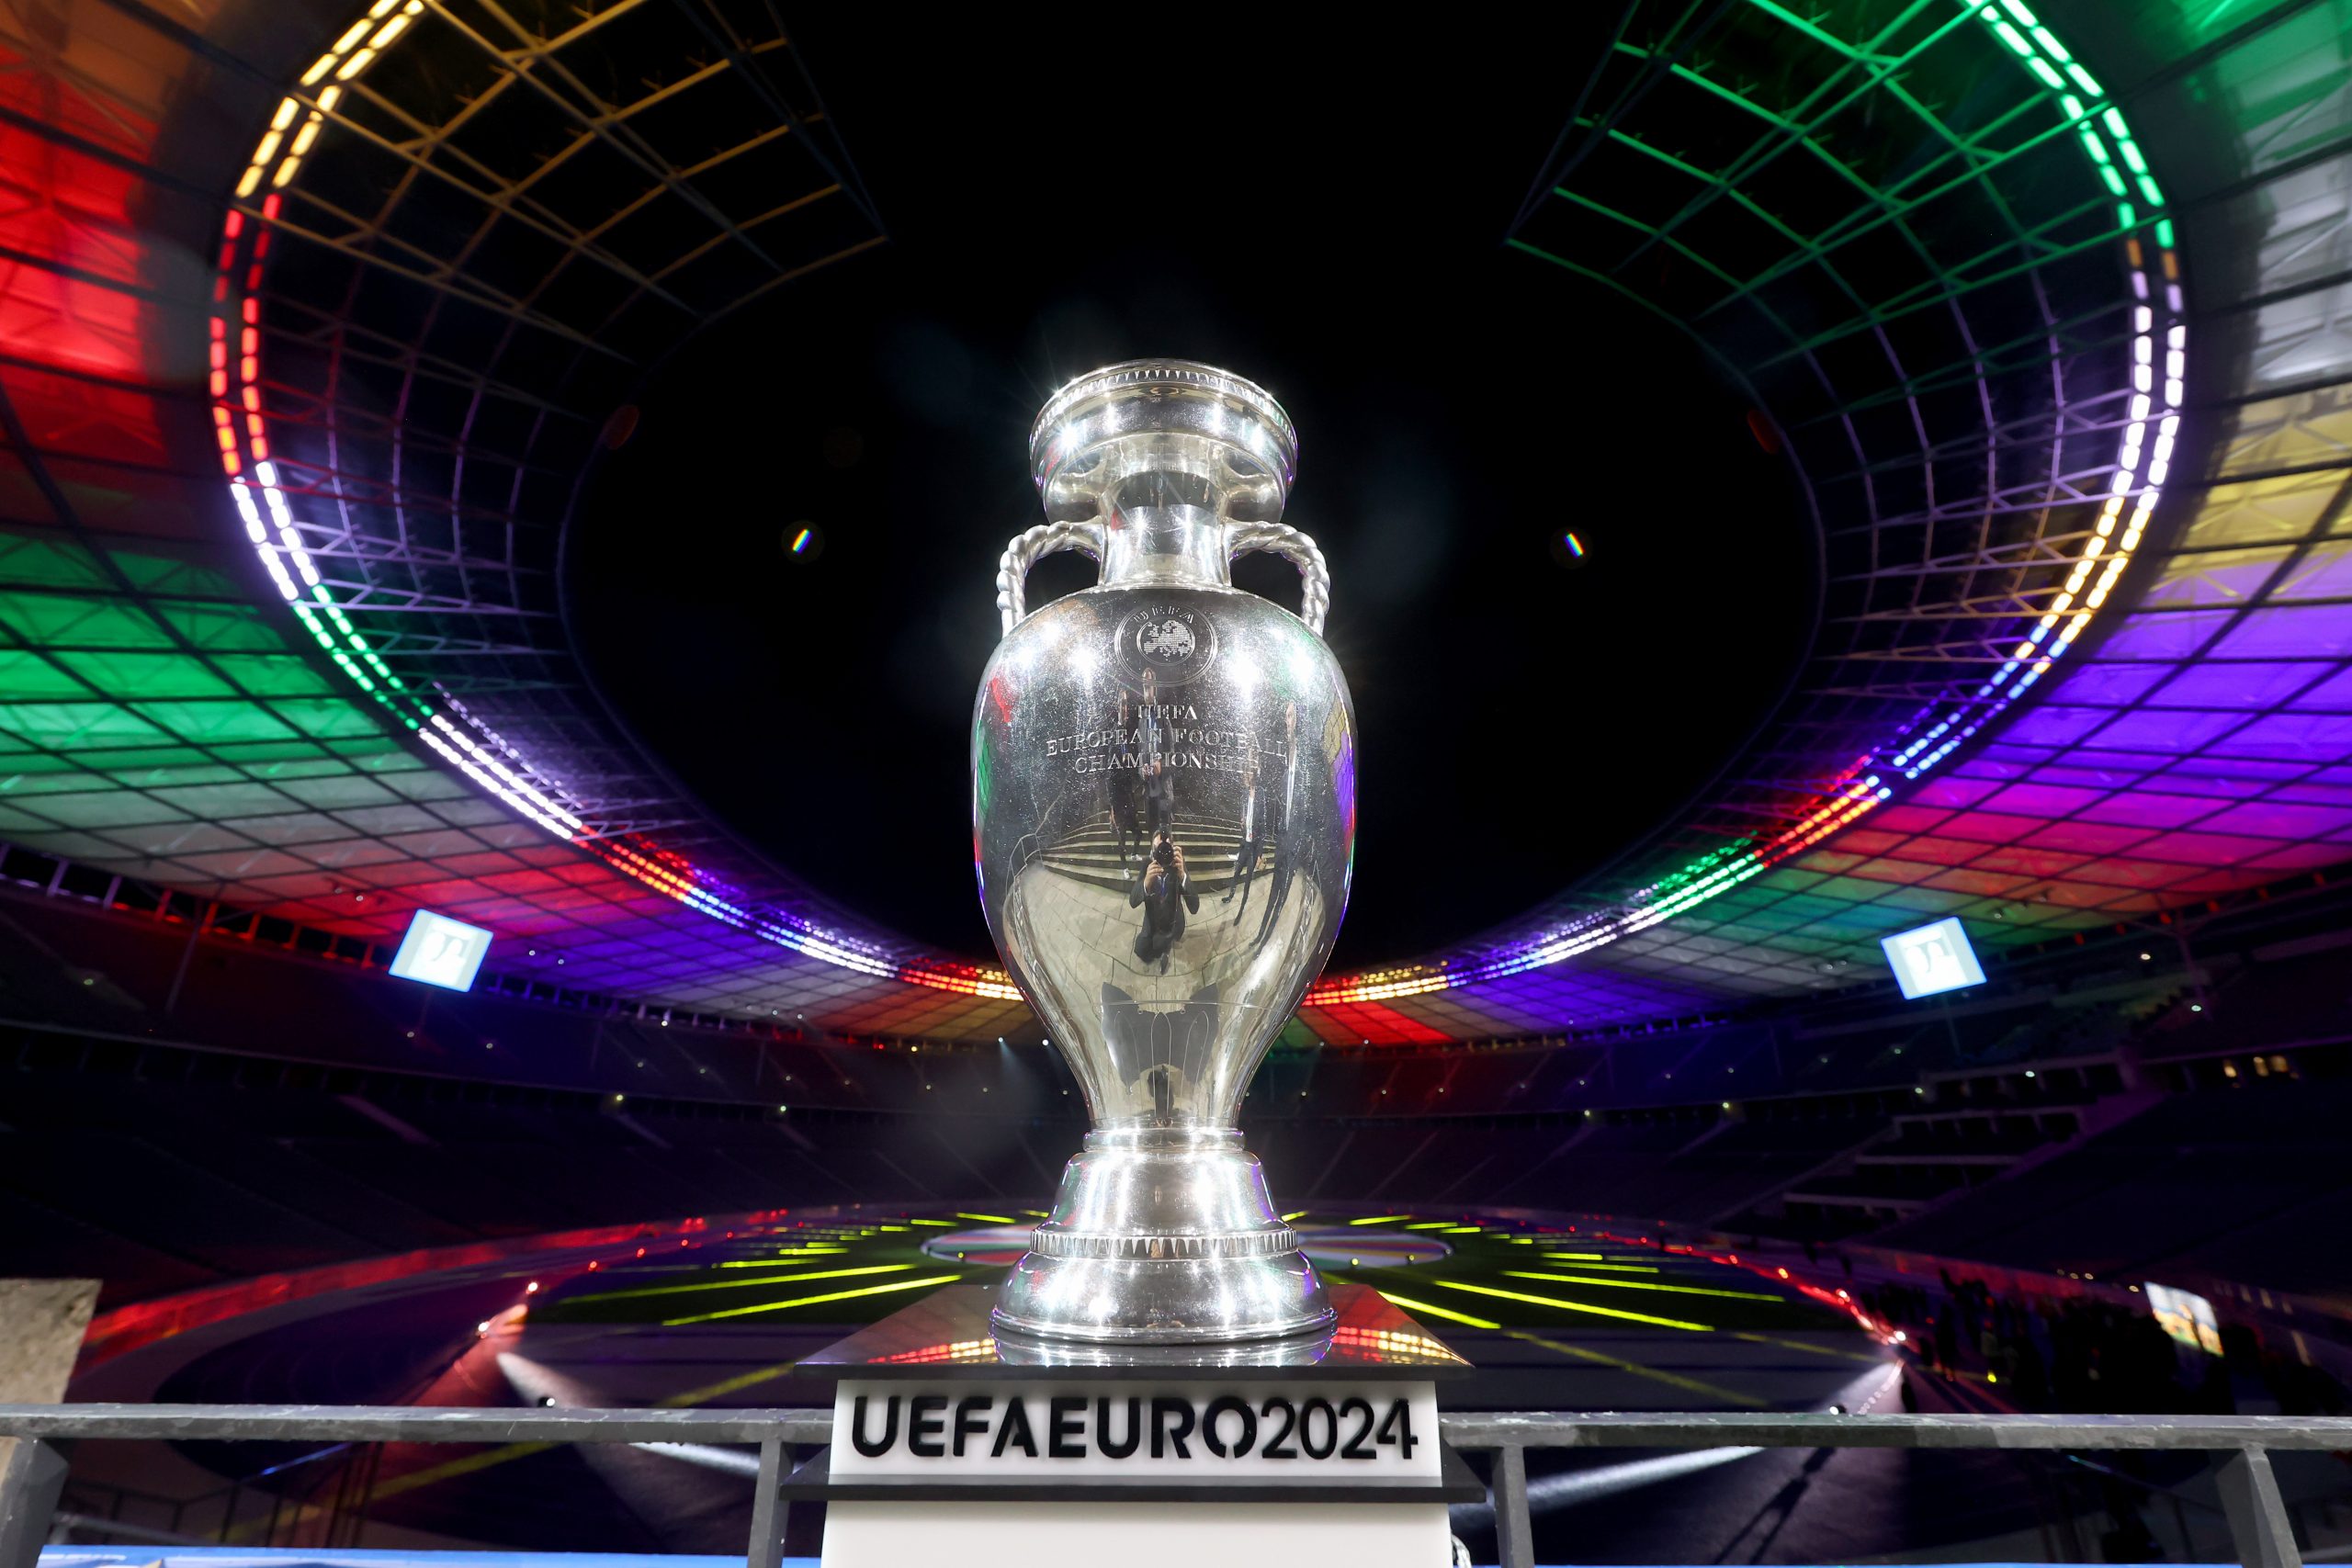 Im Hintergrund ist ein buntbeleuchtetes Stadion bei Nacht zu sehen. Sowohl das Dach als auch der Fußballplatz werden beleuchtet. Im Vordergrund ist der silberne UEFA Euro 2024 Pokal mittig auf dem Bild auf einer Säule zu erkennen. Der innen Raum des Stadions ist ganz dunkel.